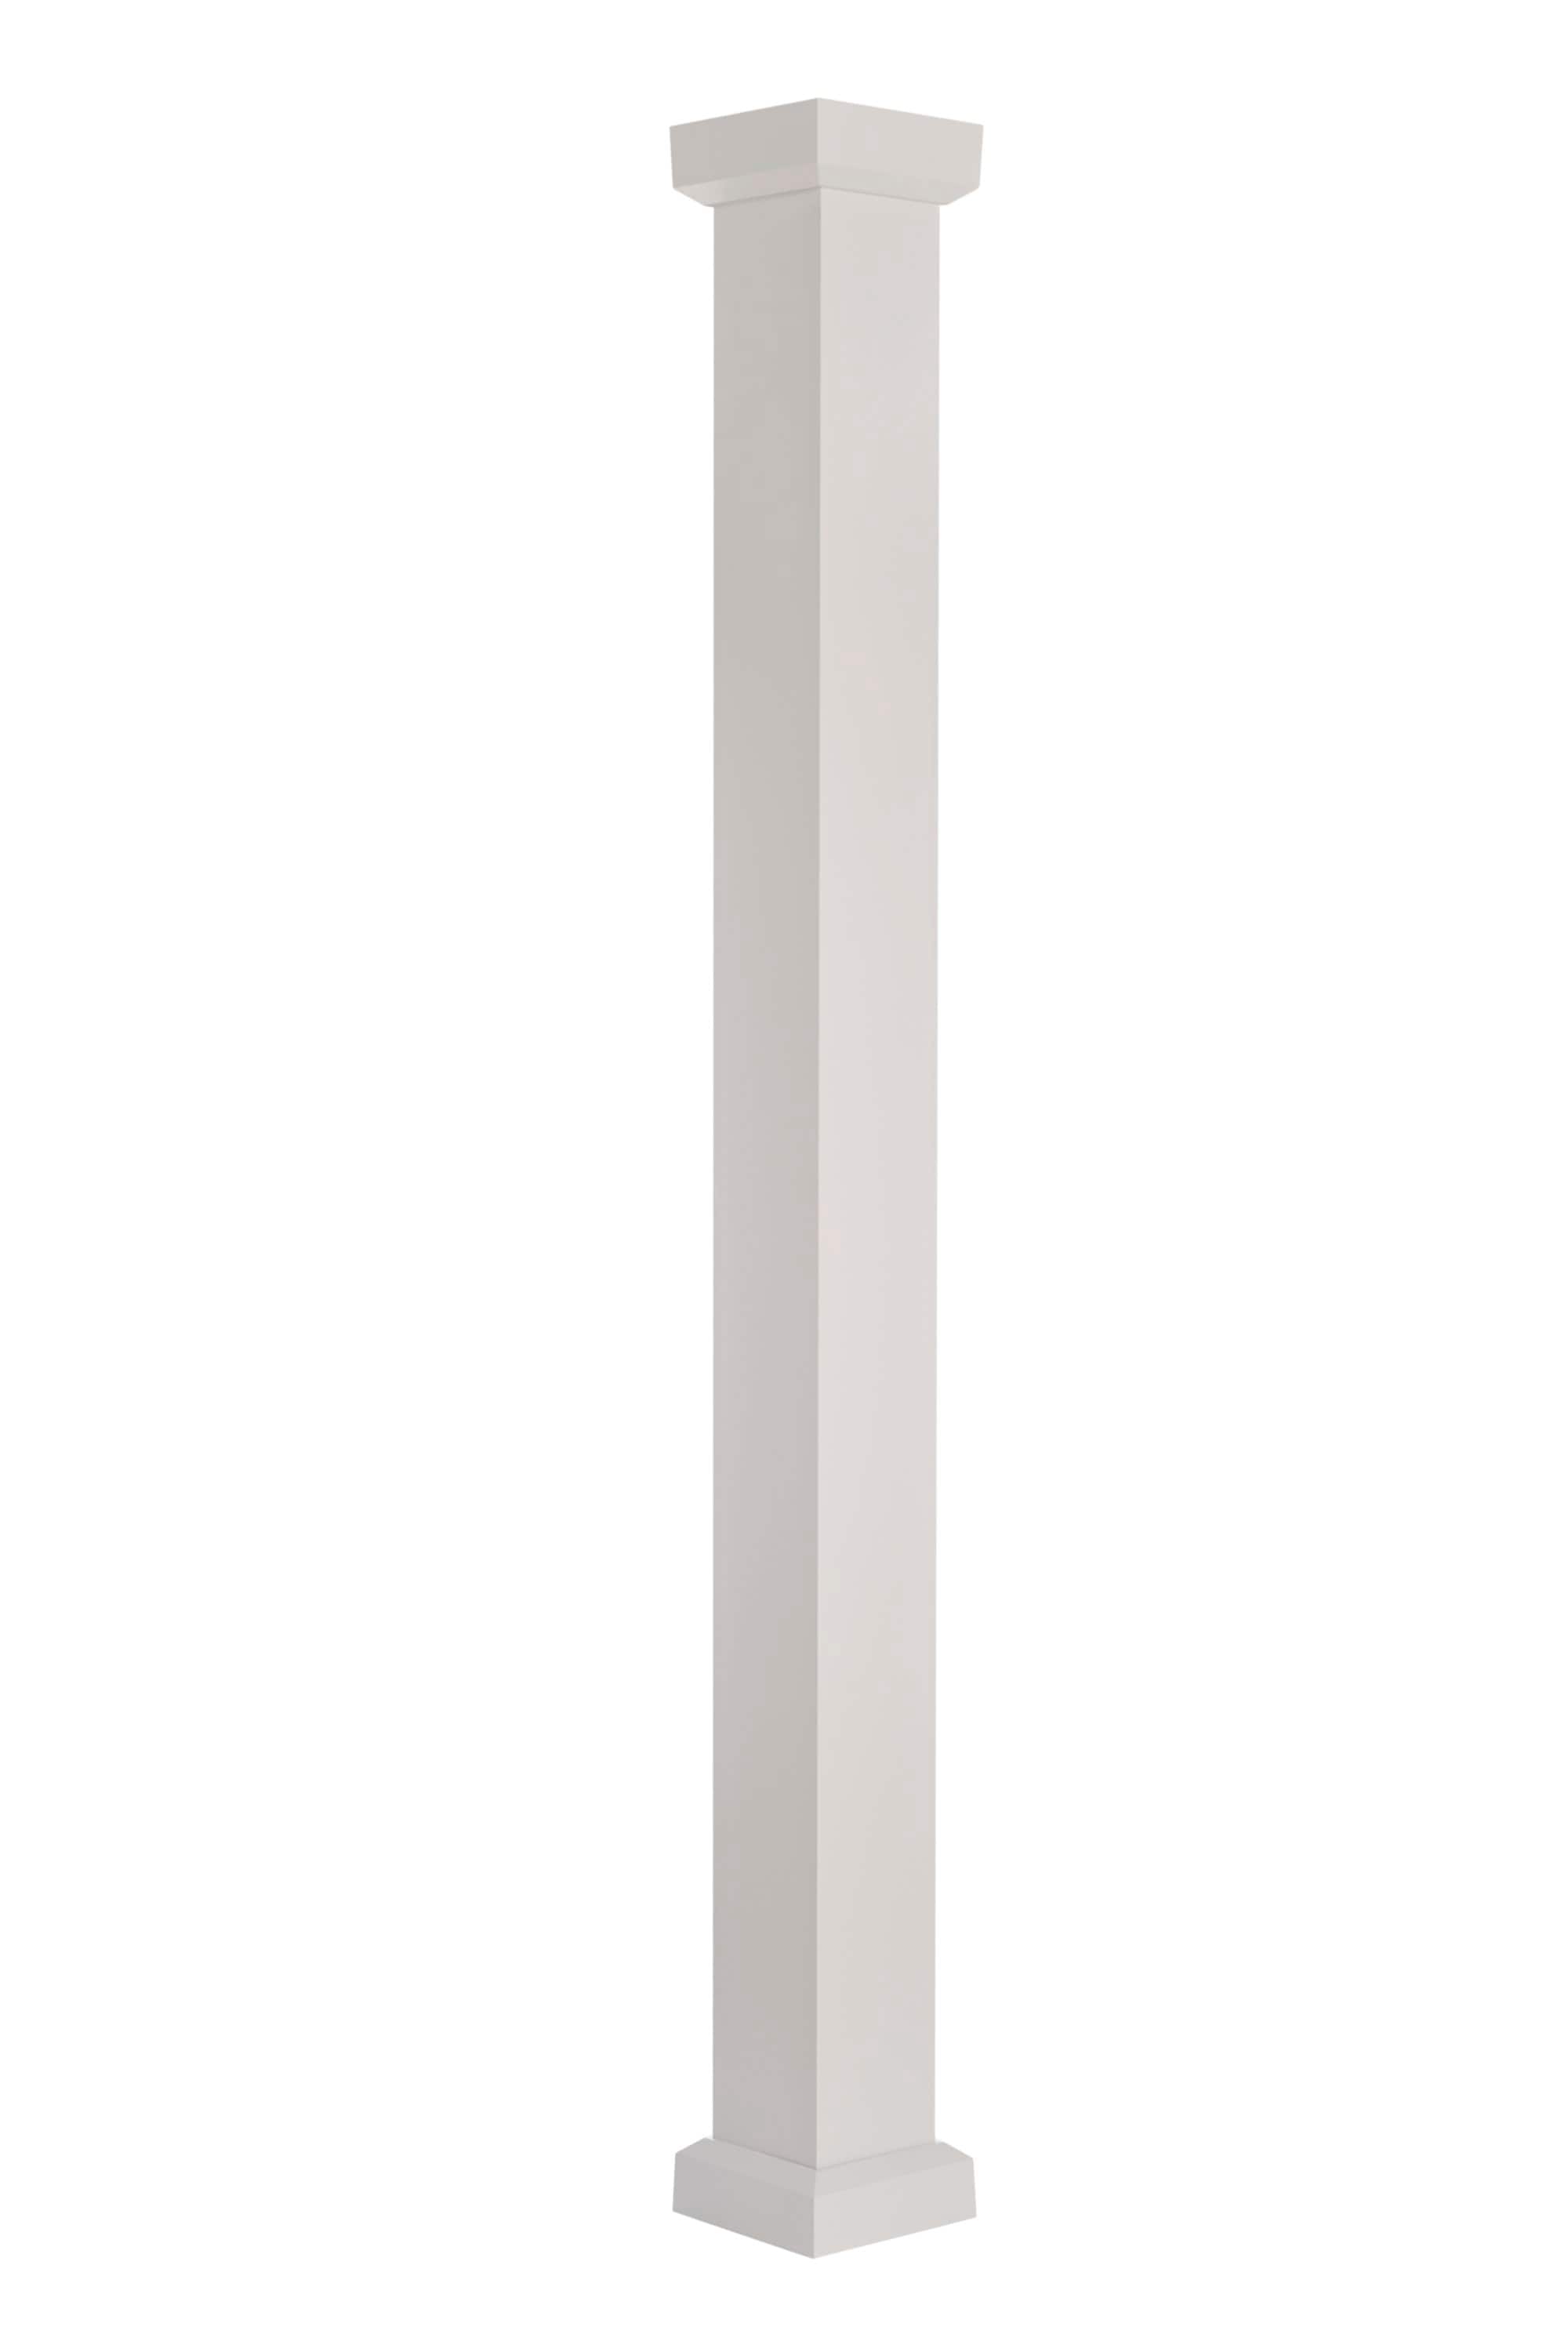 Pole-Wrap, Inc. (@PoleWrap) / X